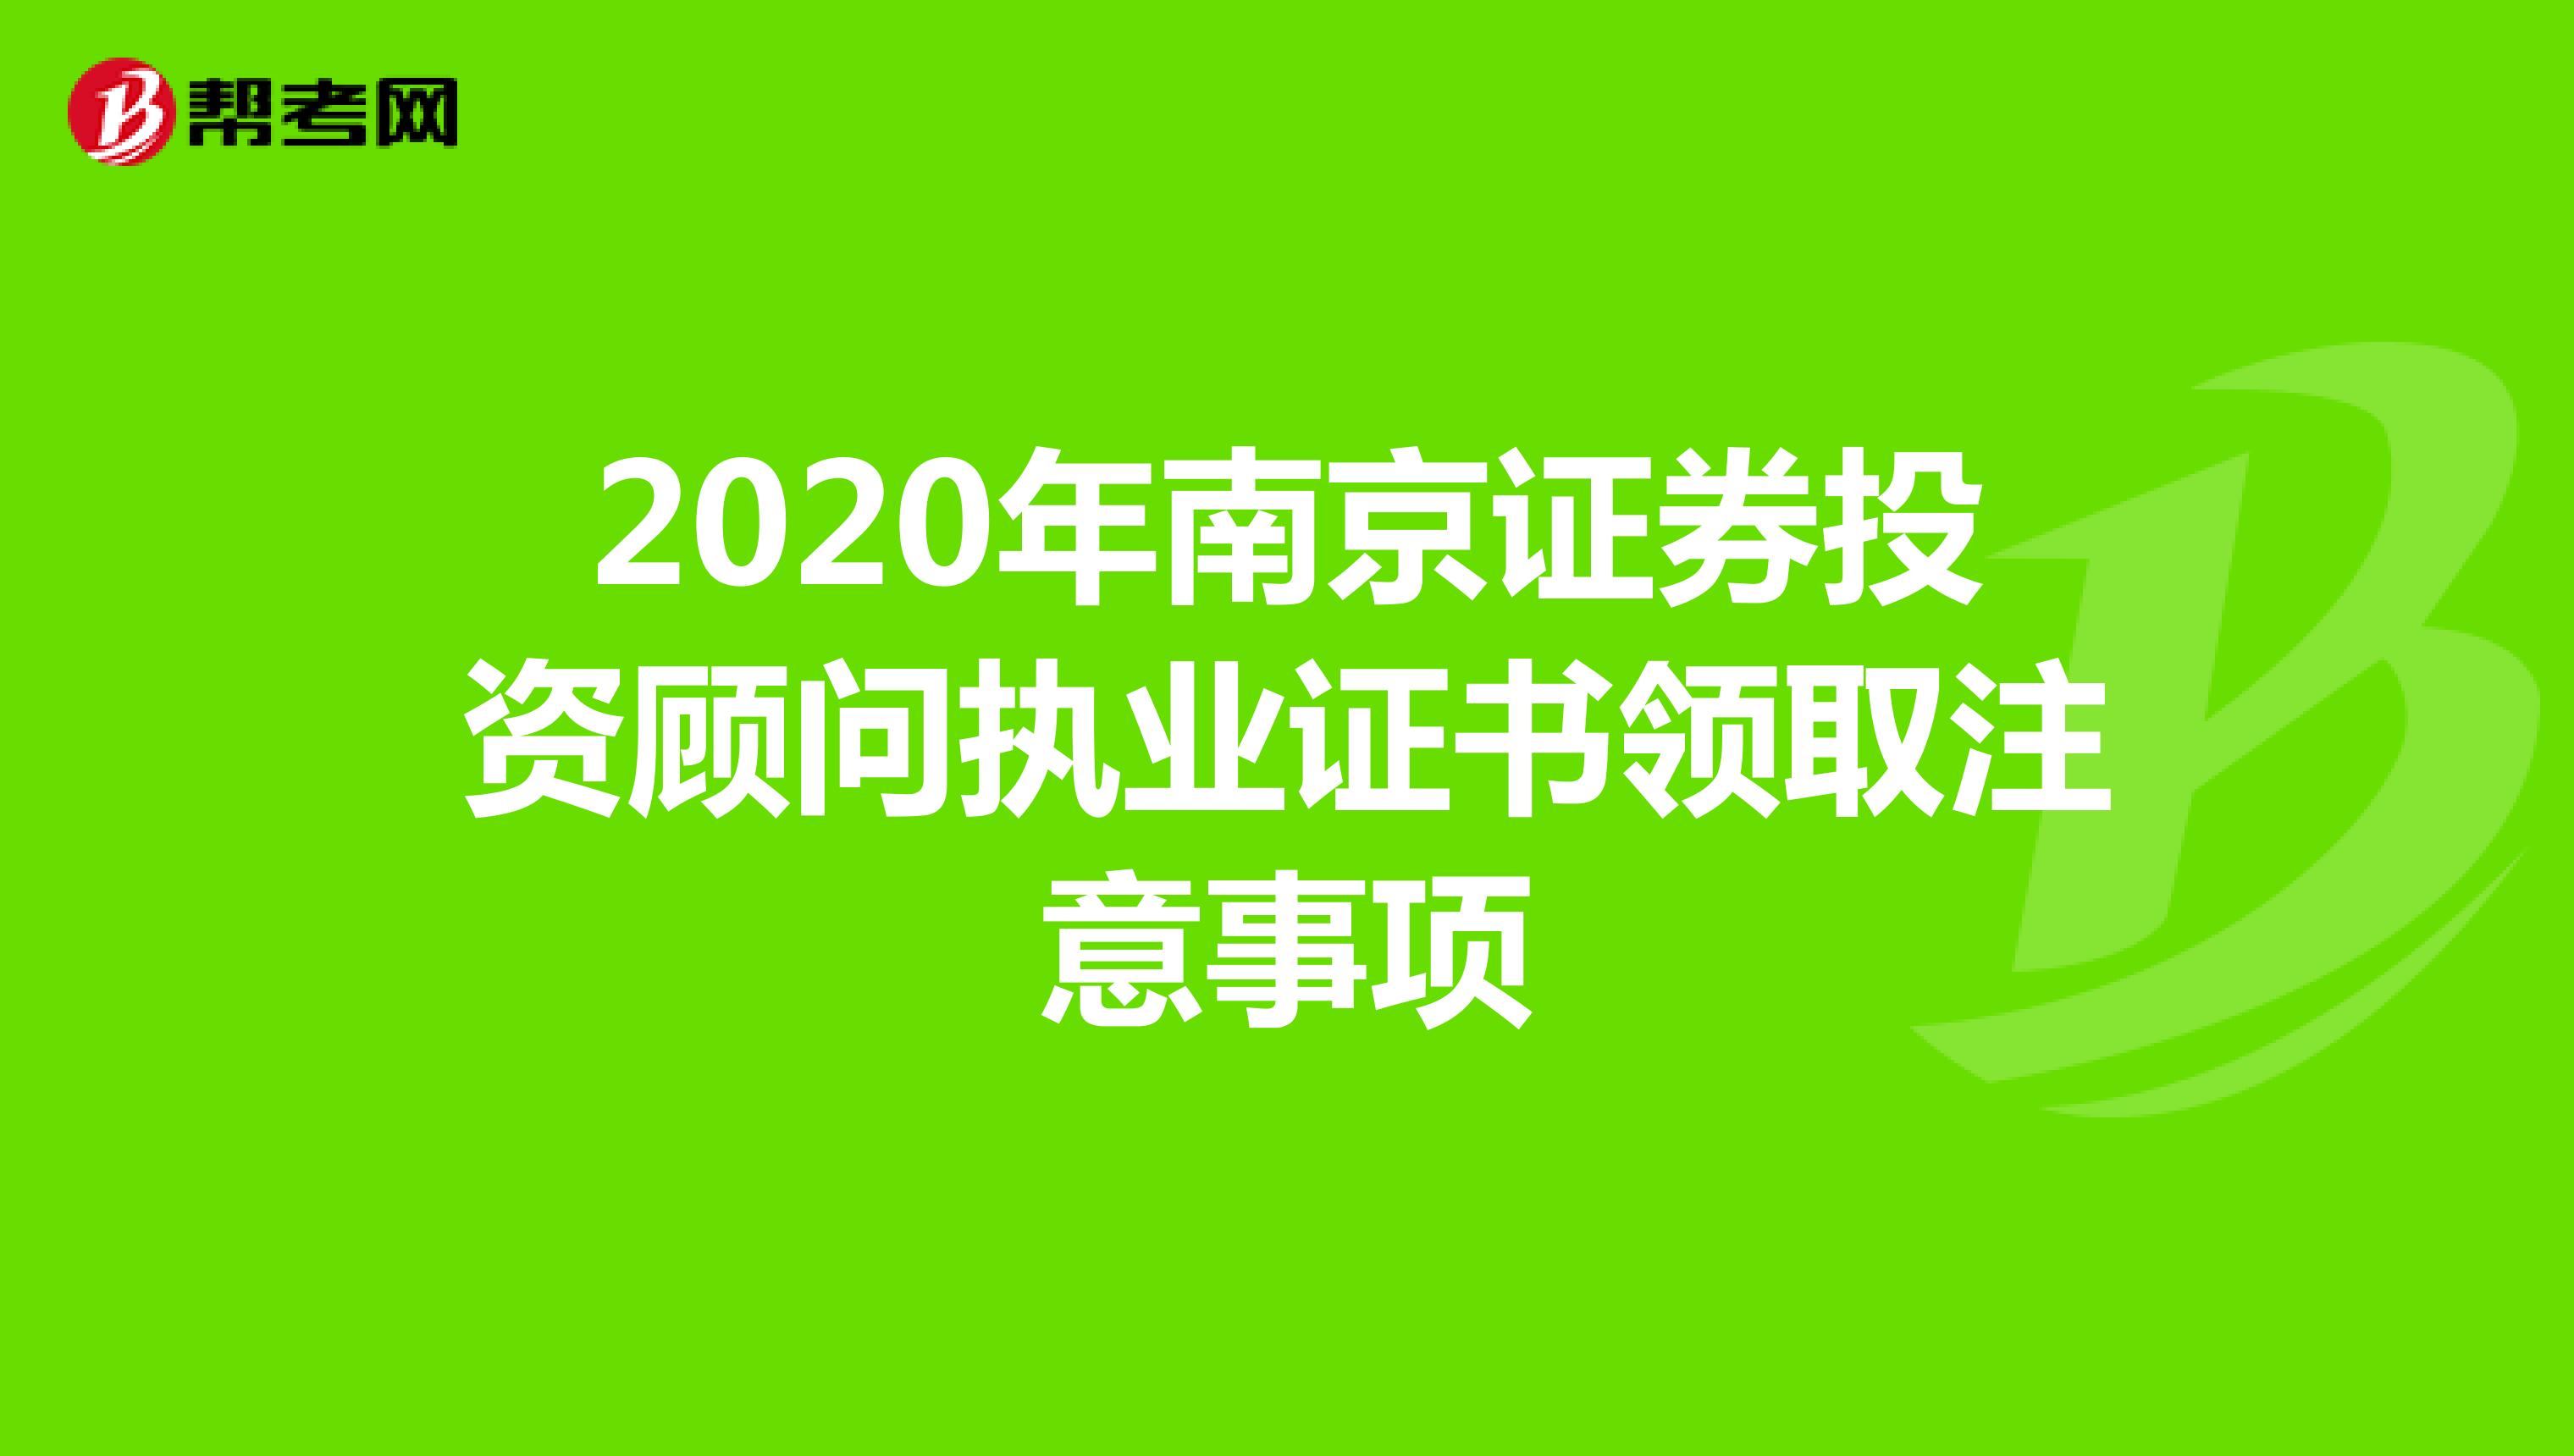 2020年南京证券投资顾问执业证书领取注意事项